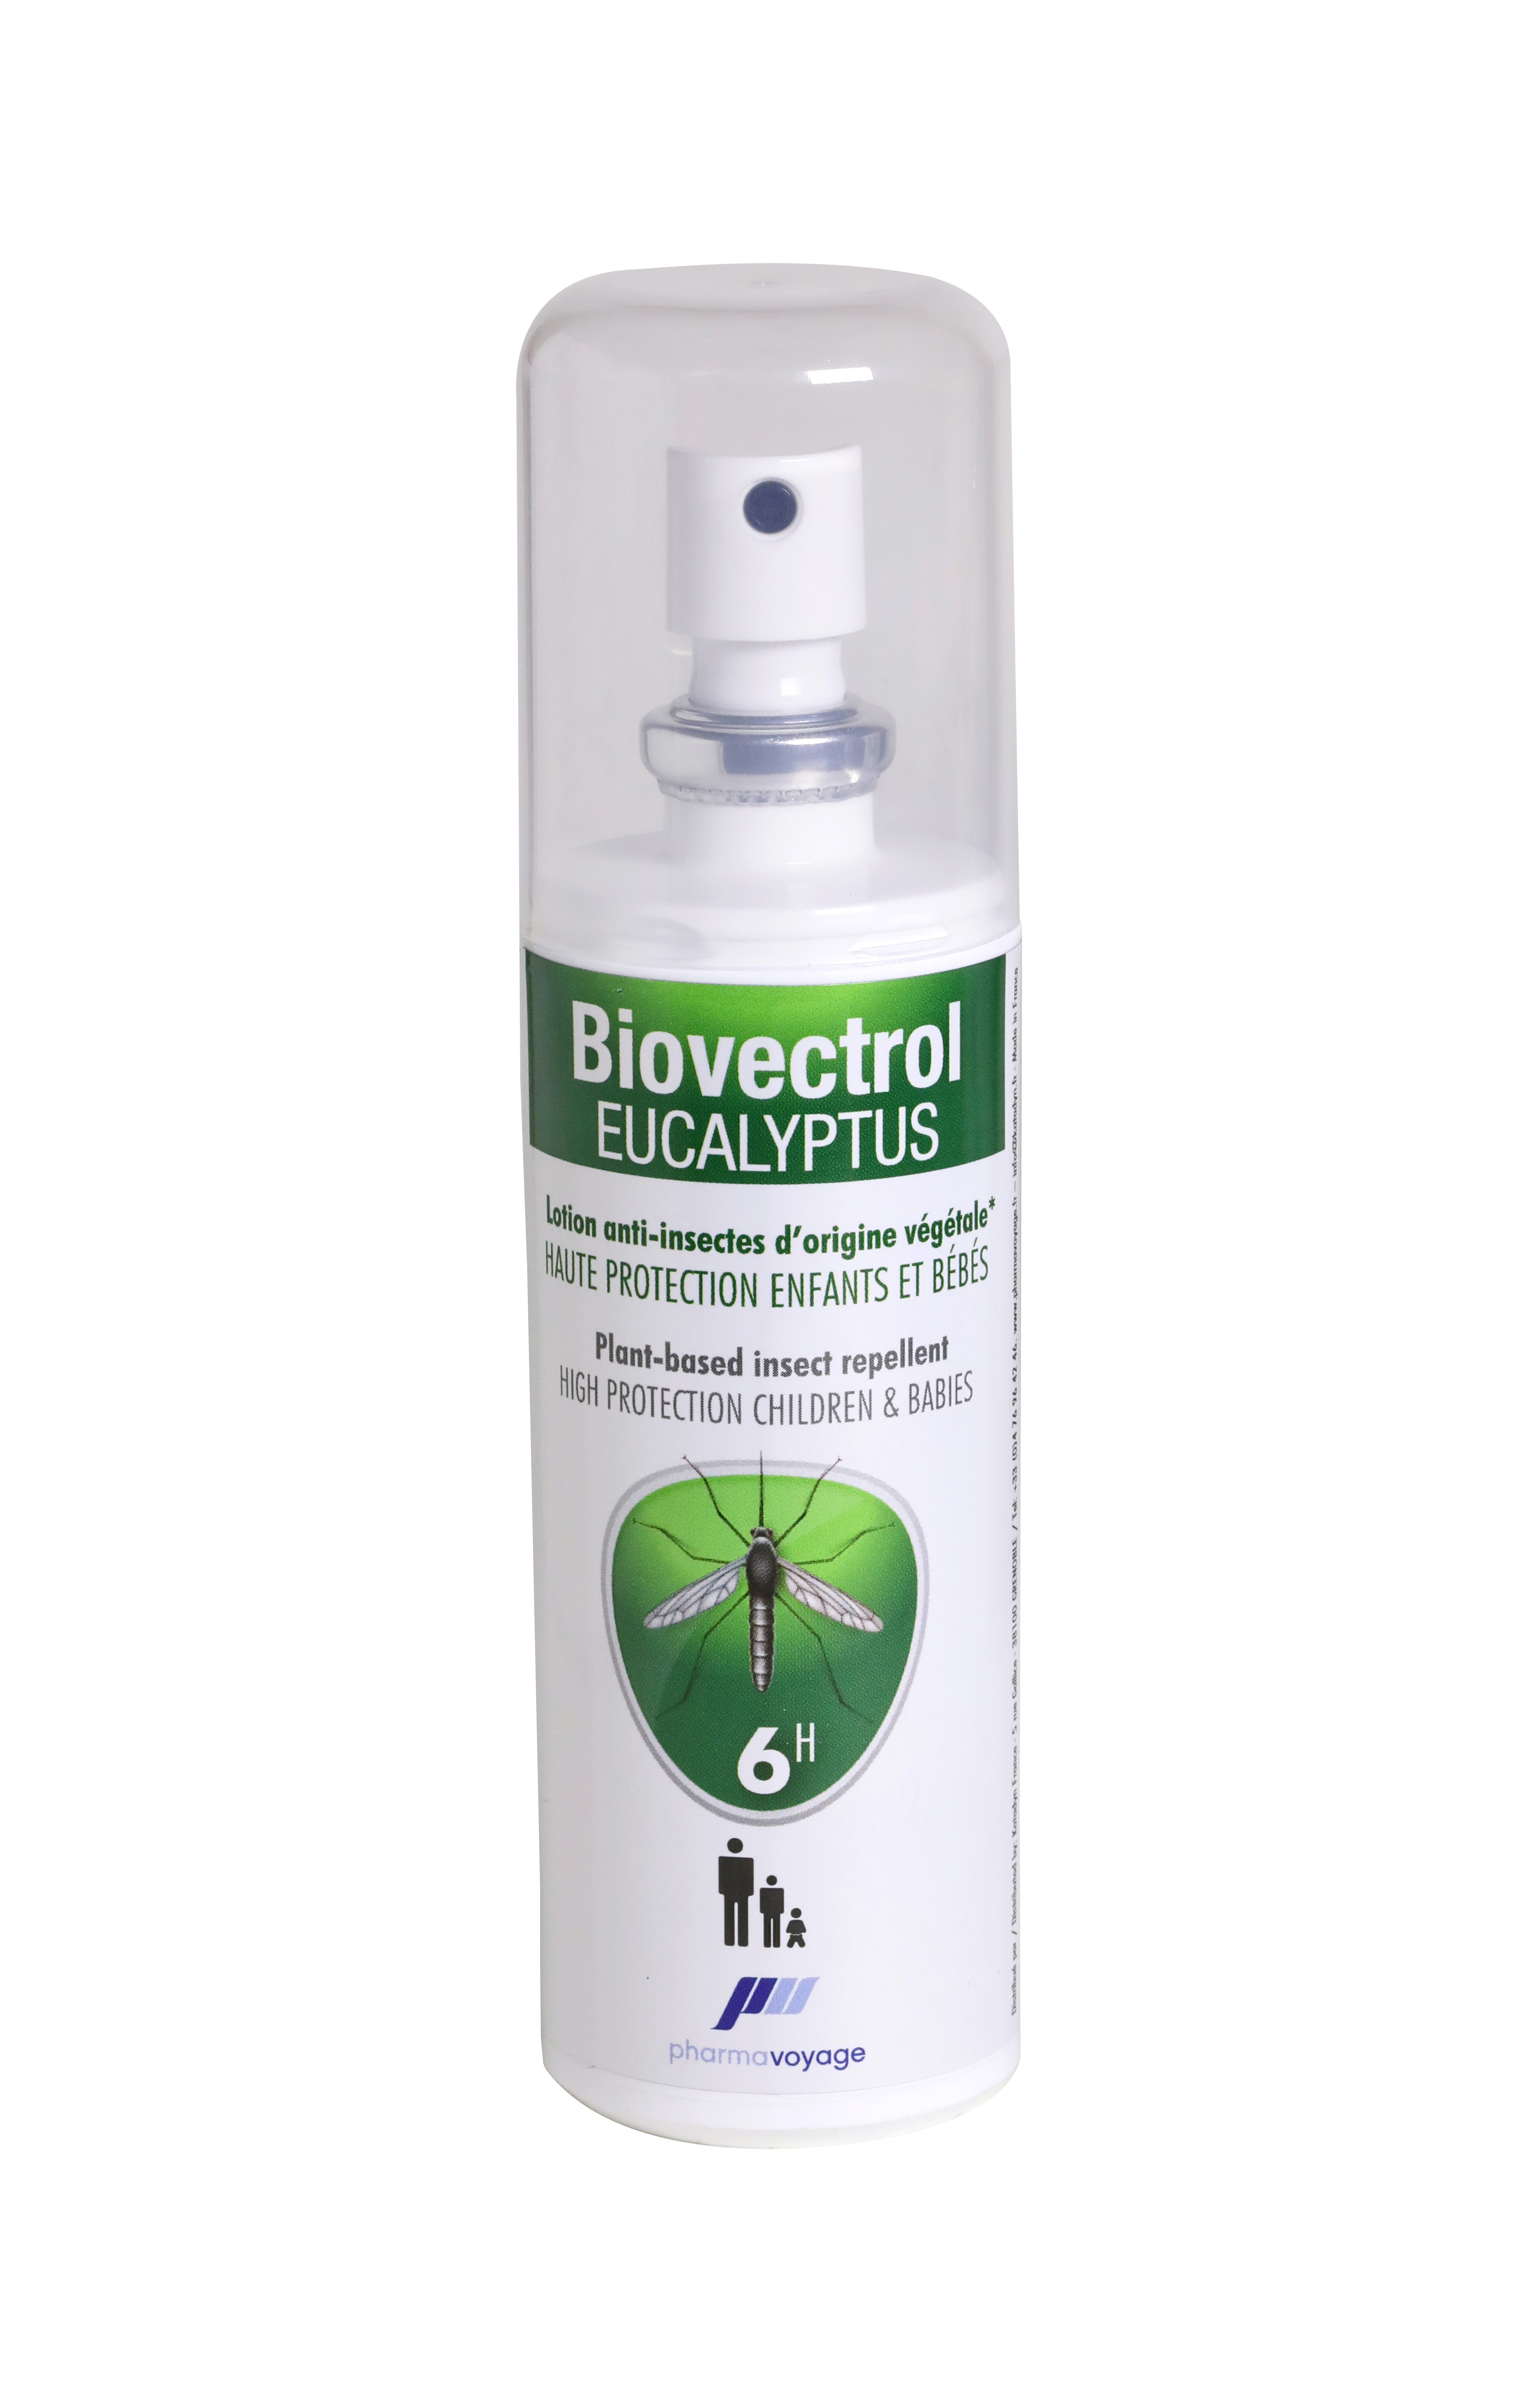 RepellShield Lotion Anti Moustique - Produit Anti Moustique Naturel -  Solution Anti Moustique Eucalyptus Citronné - Protection Efficace et Longue